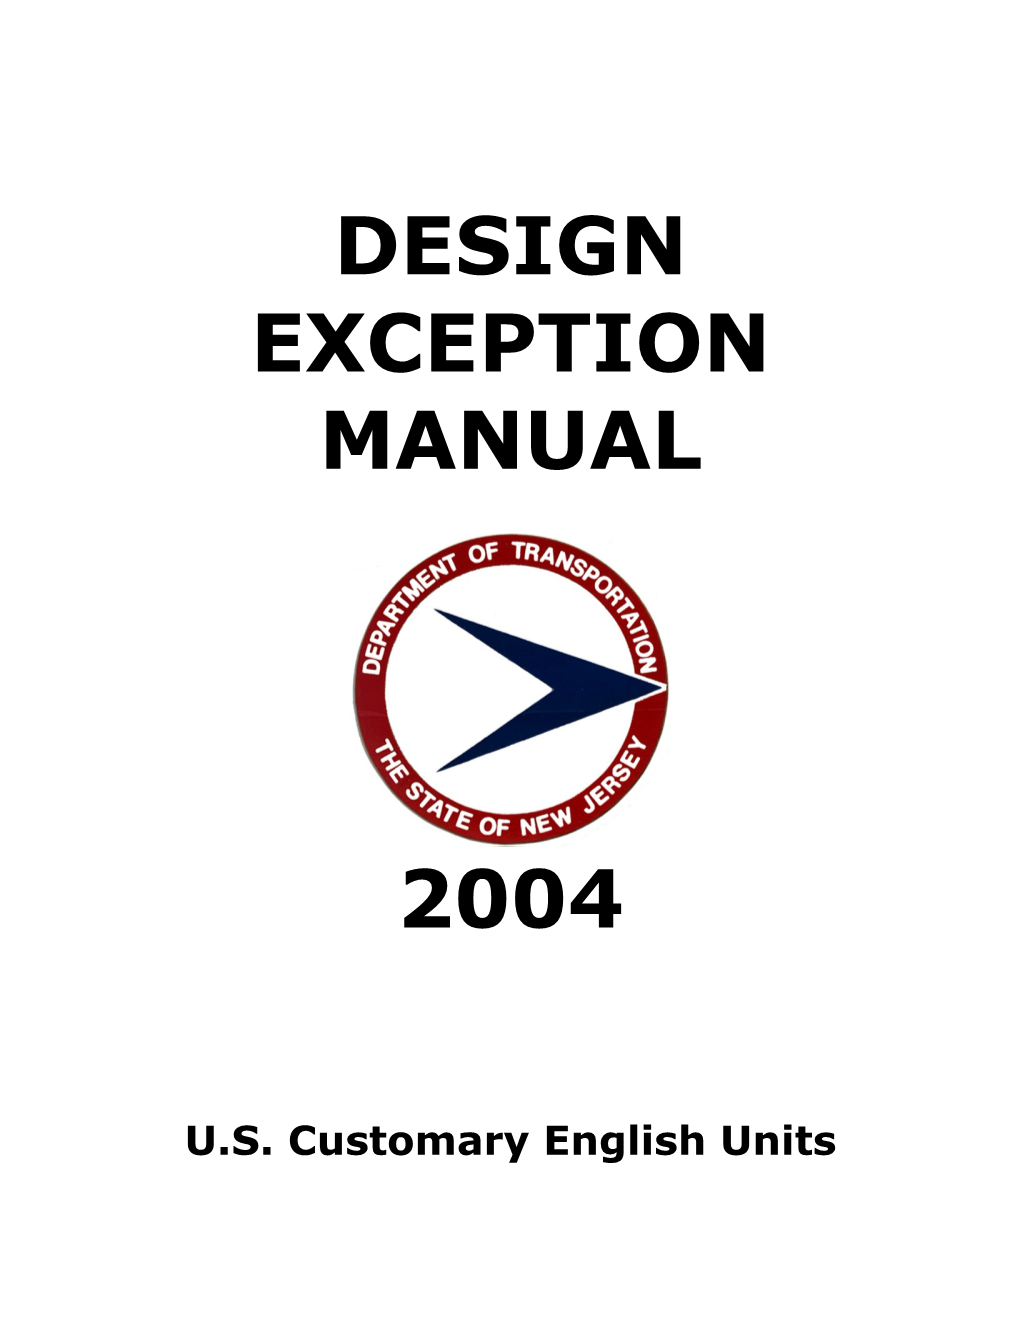 U.S. Customary English Units